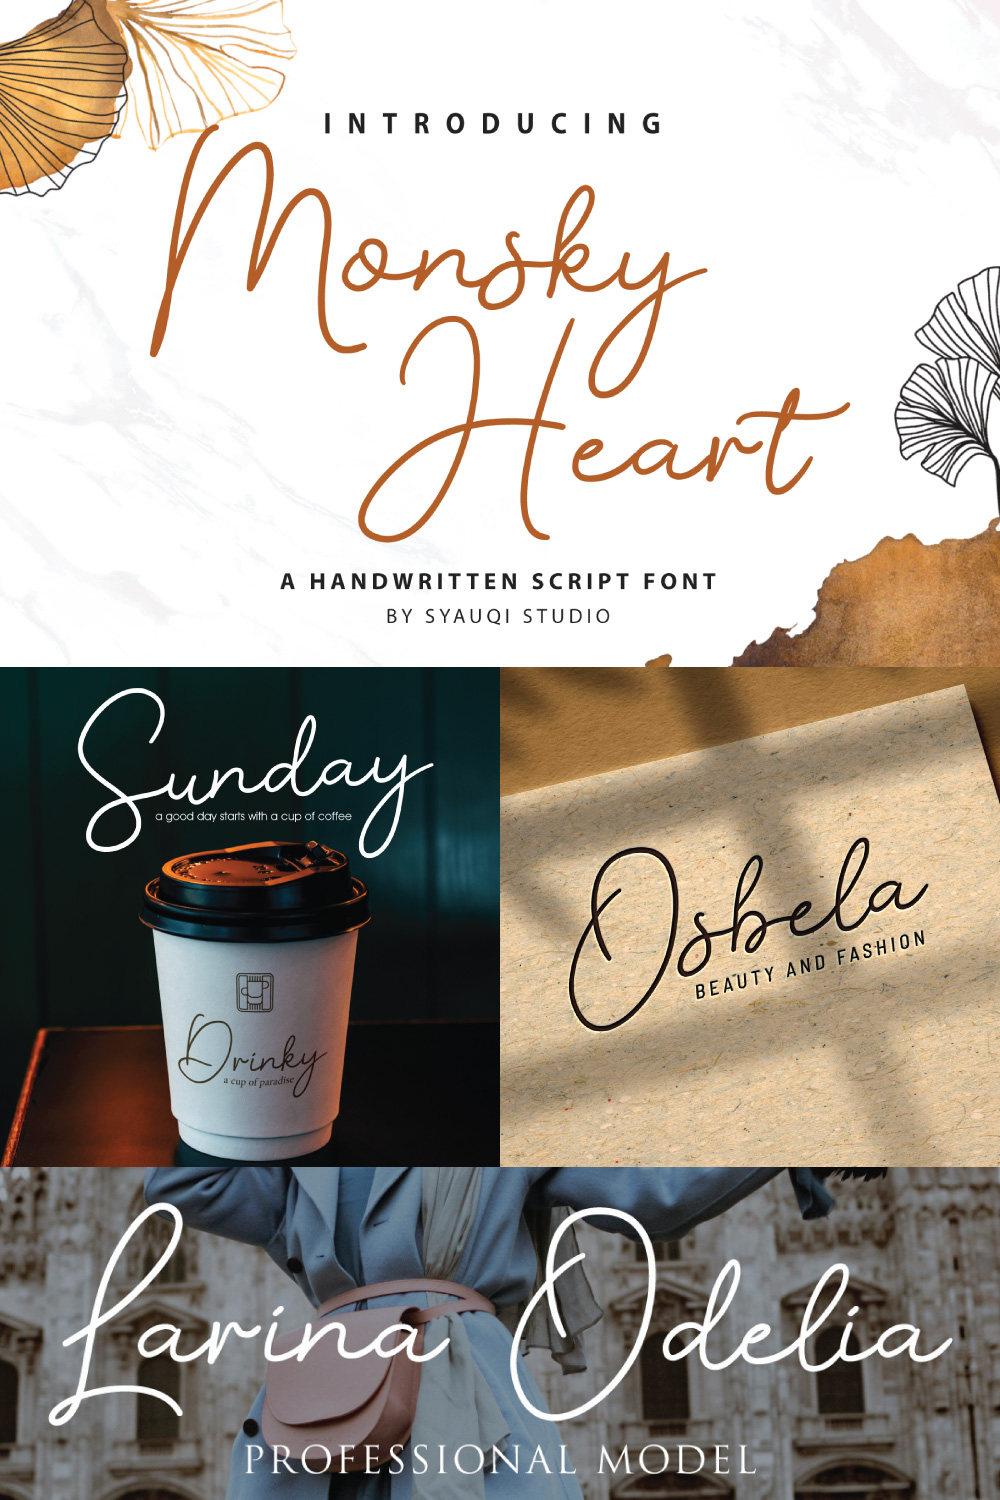 Monsky Heart, A Handwritten Script Font pinterest preview image.